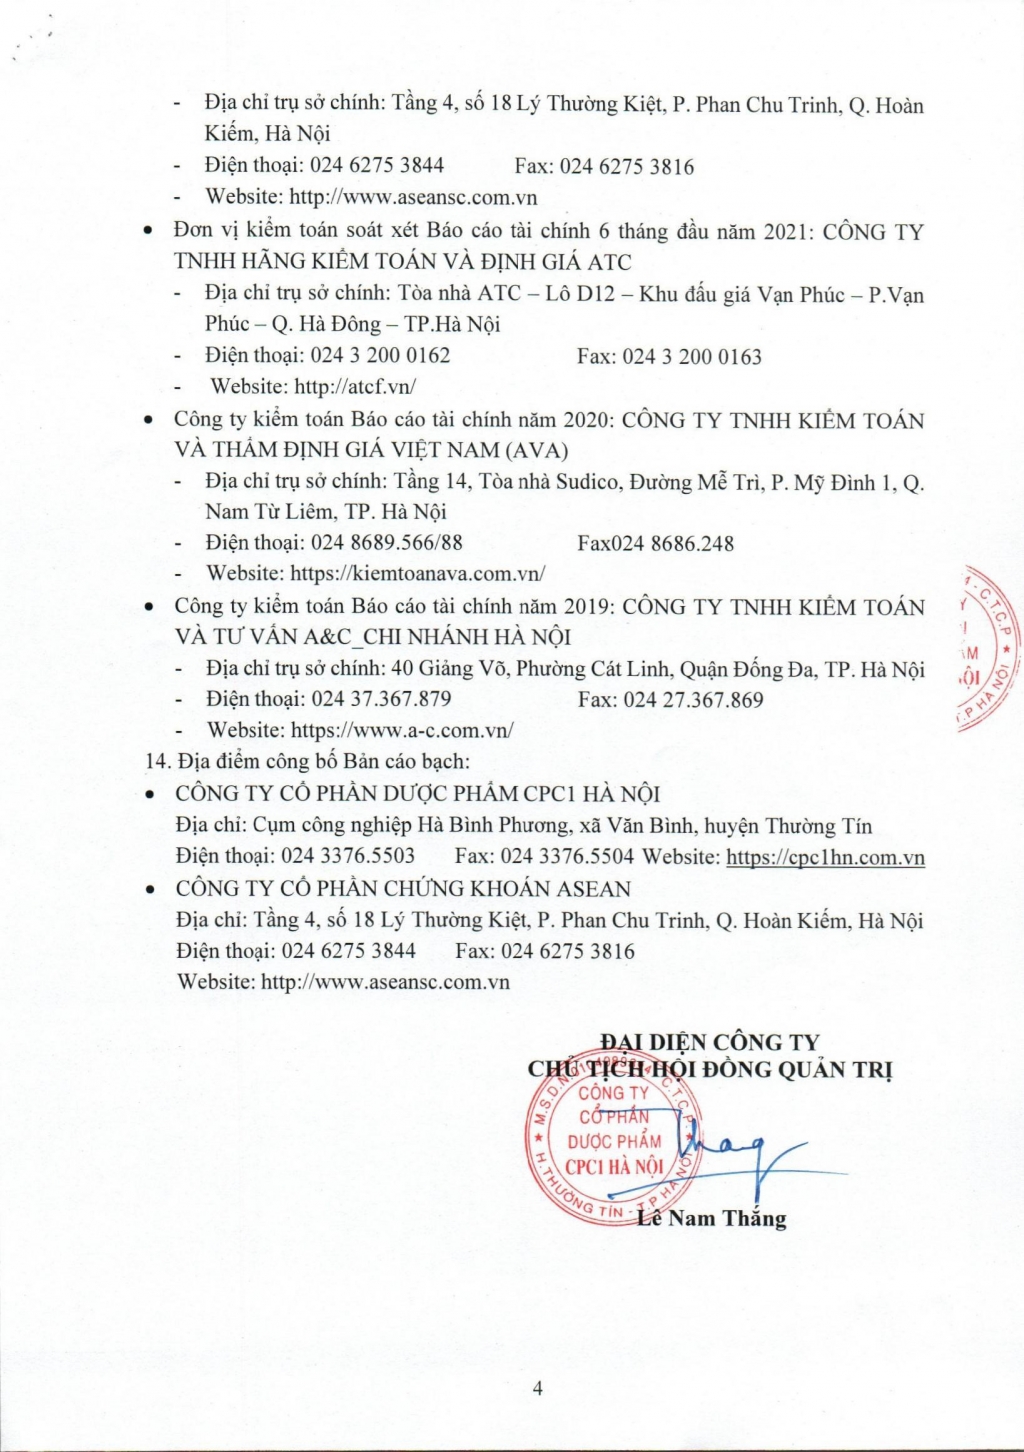 Công ty Cổ phần Dược phẩm CPC1 Hà Nội thông báo chào bán cổ phiếu ra công chúng